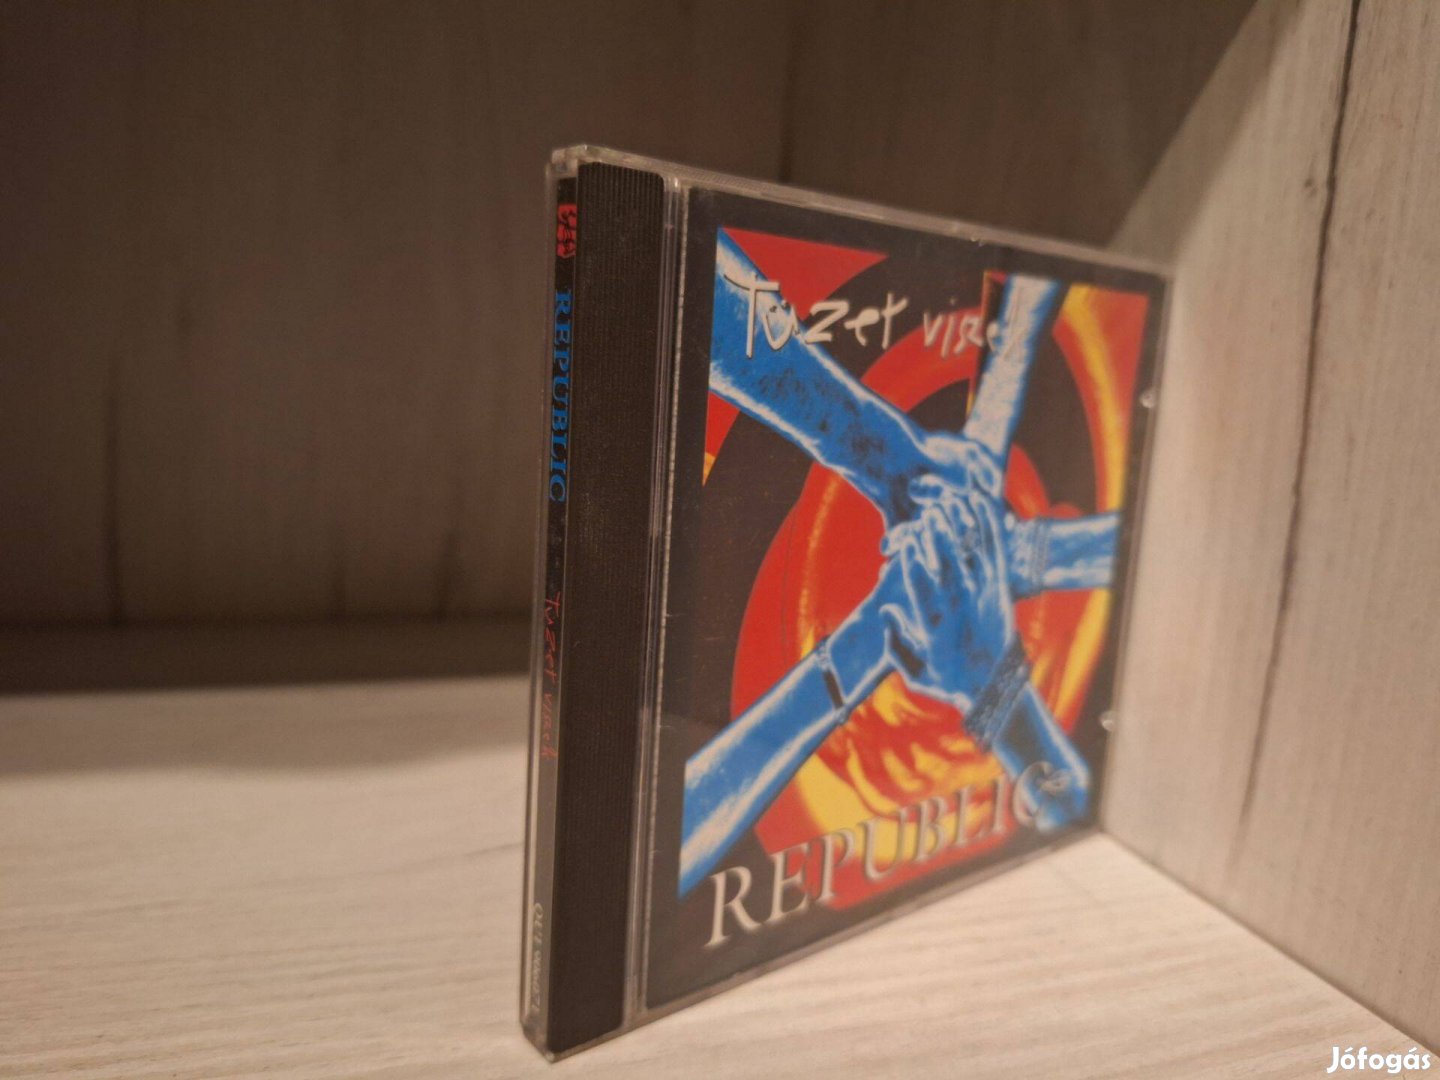 Republic - Tüzet Viszek CD